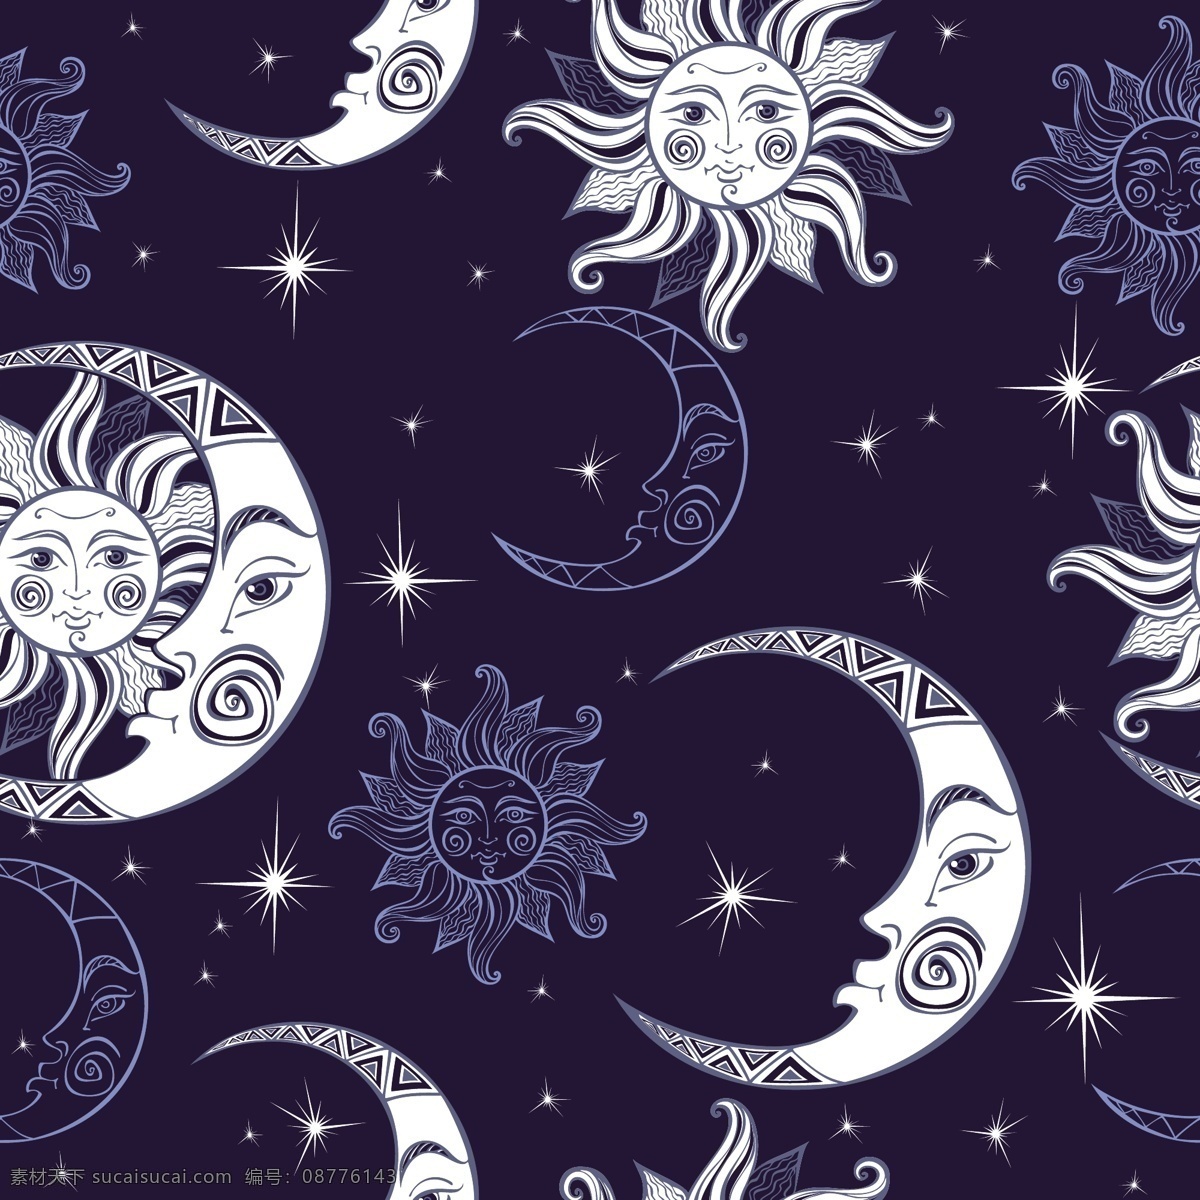 月亮星空 矢量图 大牌图案 抽象图案 月亮 星空 精美 面料 图案 花型 底纹边框 背景底纹